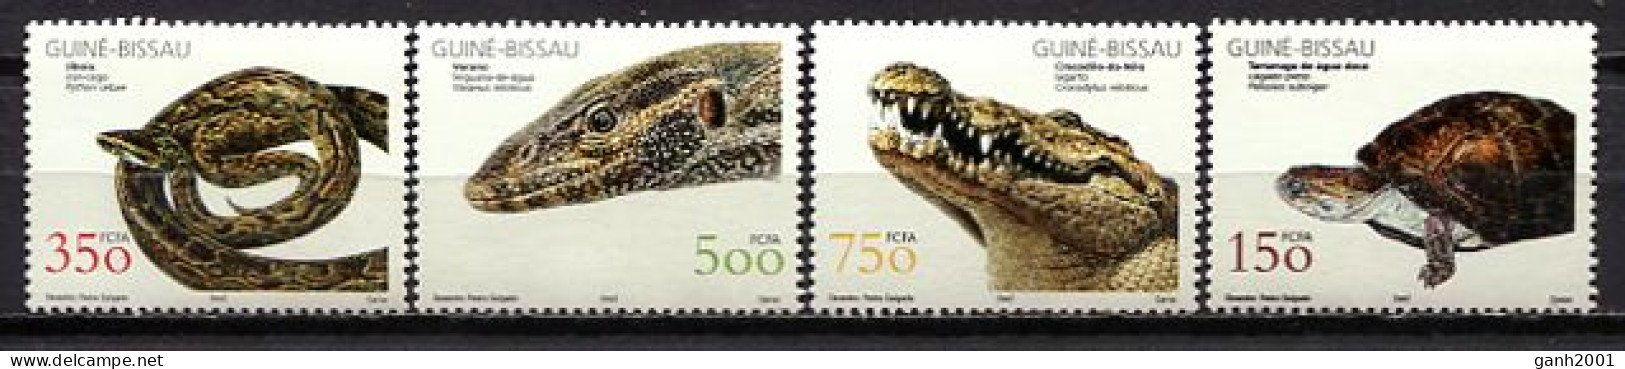 Guinea Bissau 2002 / Reptiles Snakes Turtles MNH Tortugas Serpientes Schlangen Schildkröte / Cu0231  33-42 - Schlangen